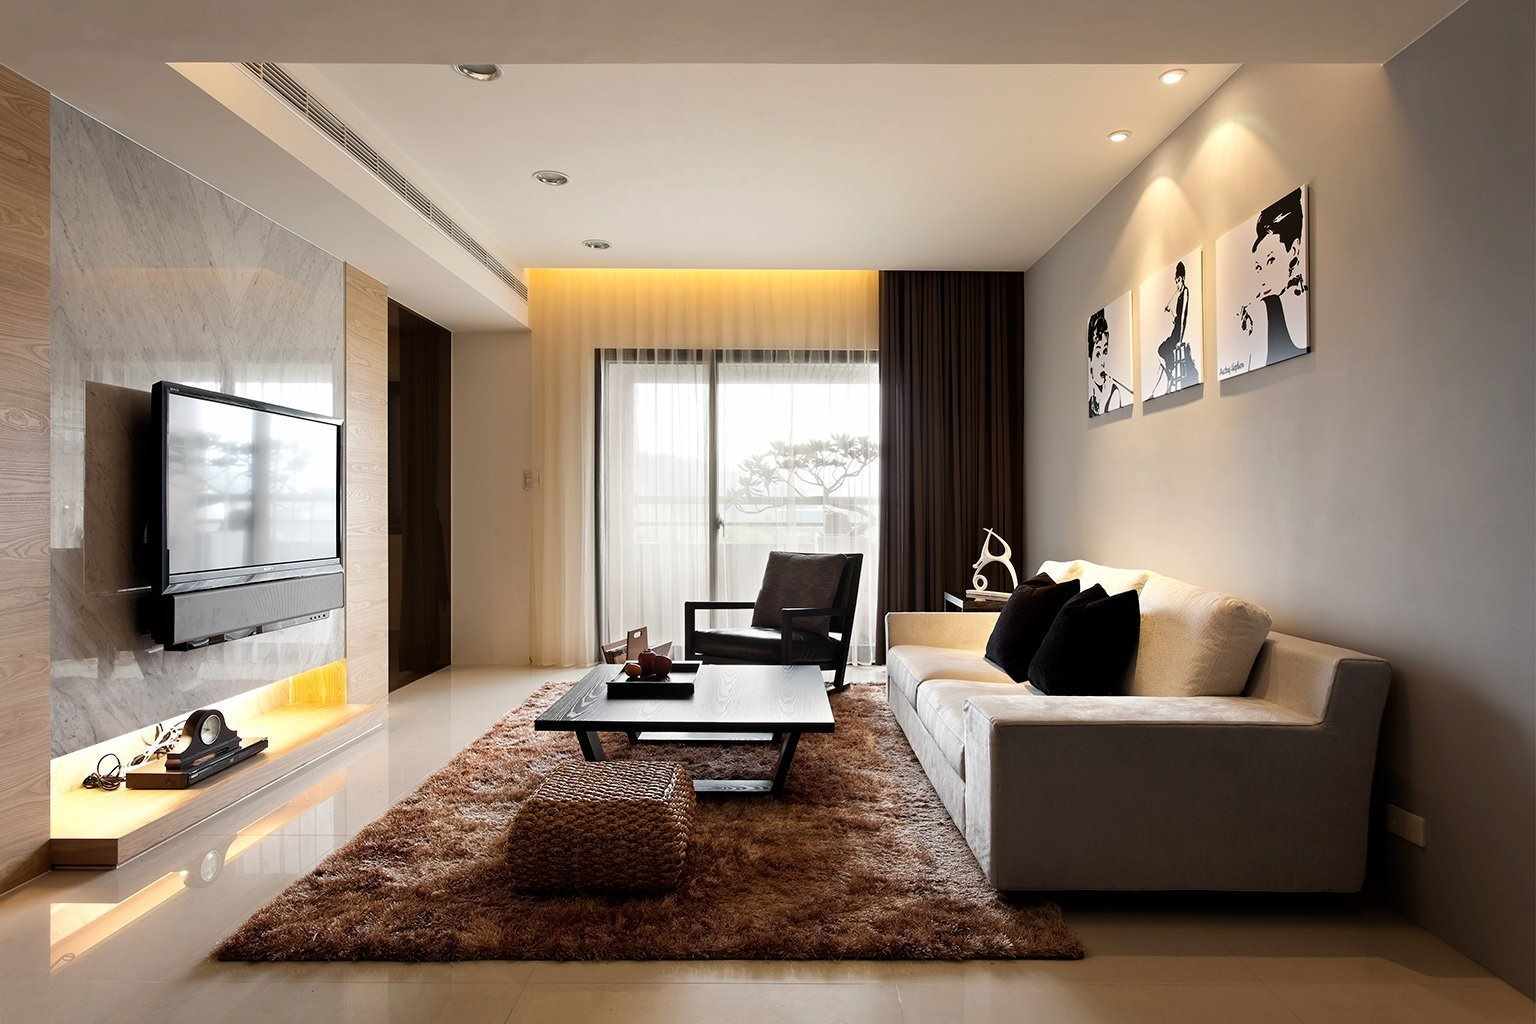 ein beispiel für das ungewöhnliche design eines wohnzimmers im stil des minimalismus